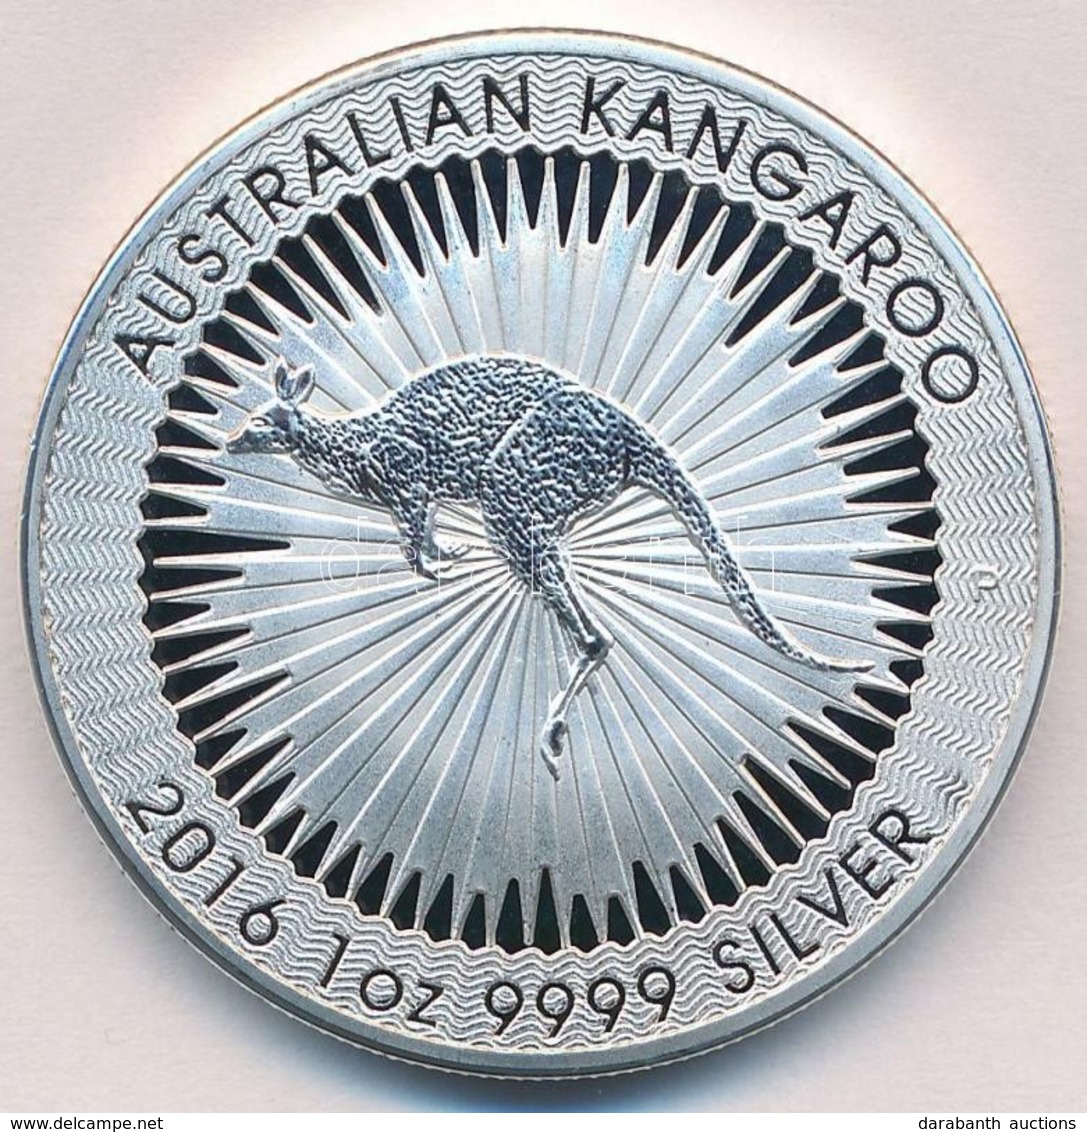 Ausztrália 2016. 1$ 'II. Erzsébet / Ausztrál Kenguru' (1oz/0.999) T:BU
Australia 2016. 1 Dollar 'Elisabeth II / Australi - Ohne Zuordnung